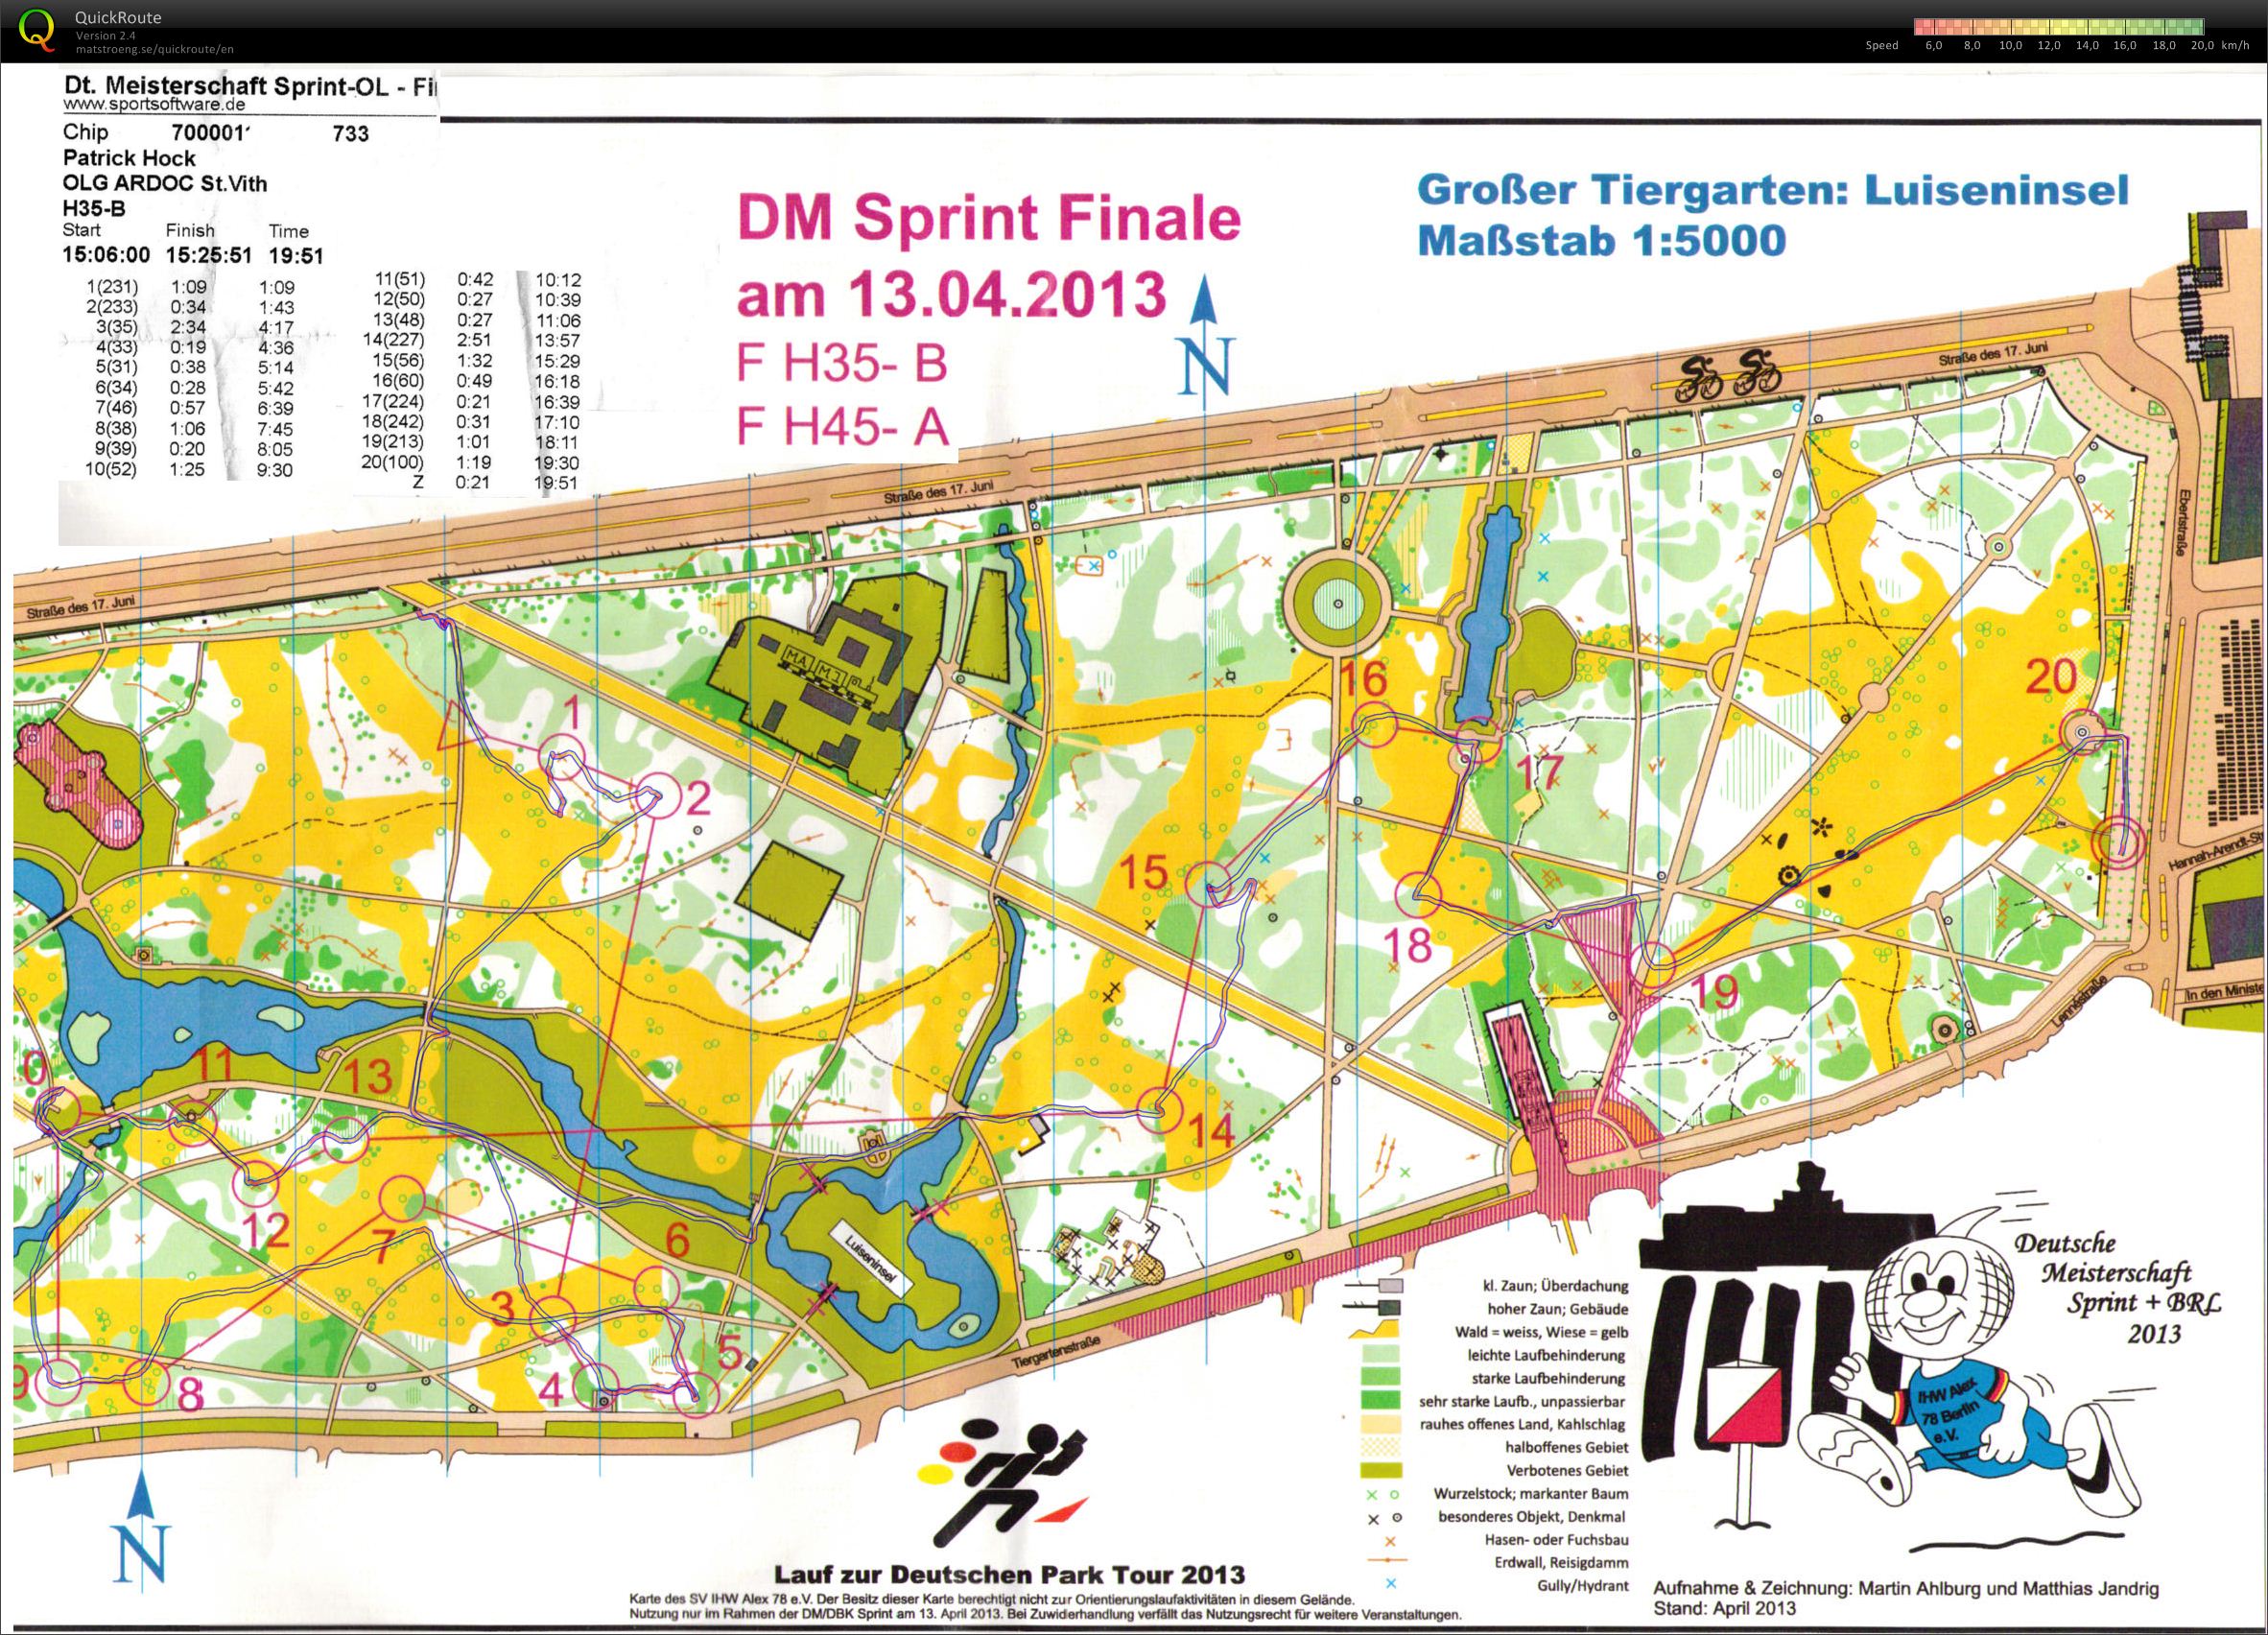 DM Sprint Finale - Berlin (13/04/2013)